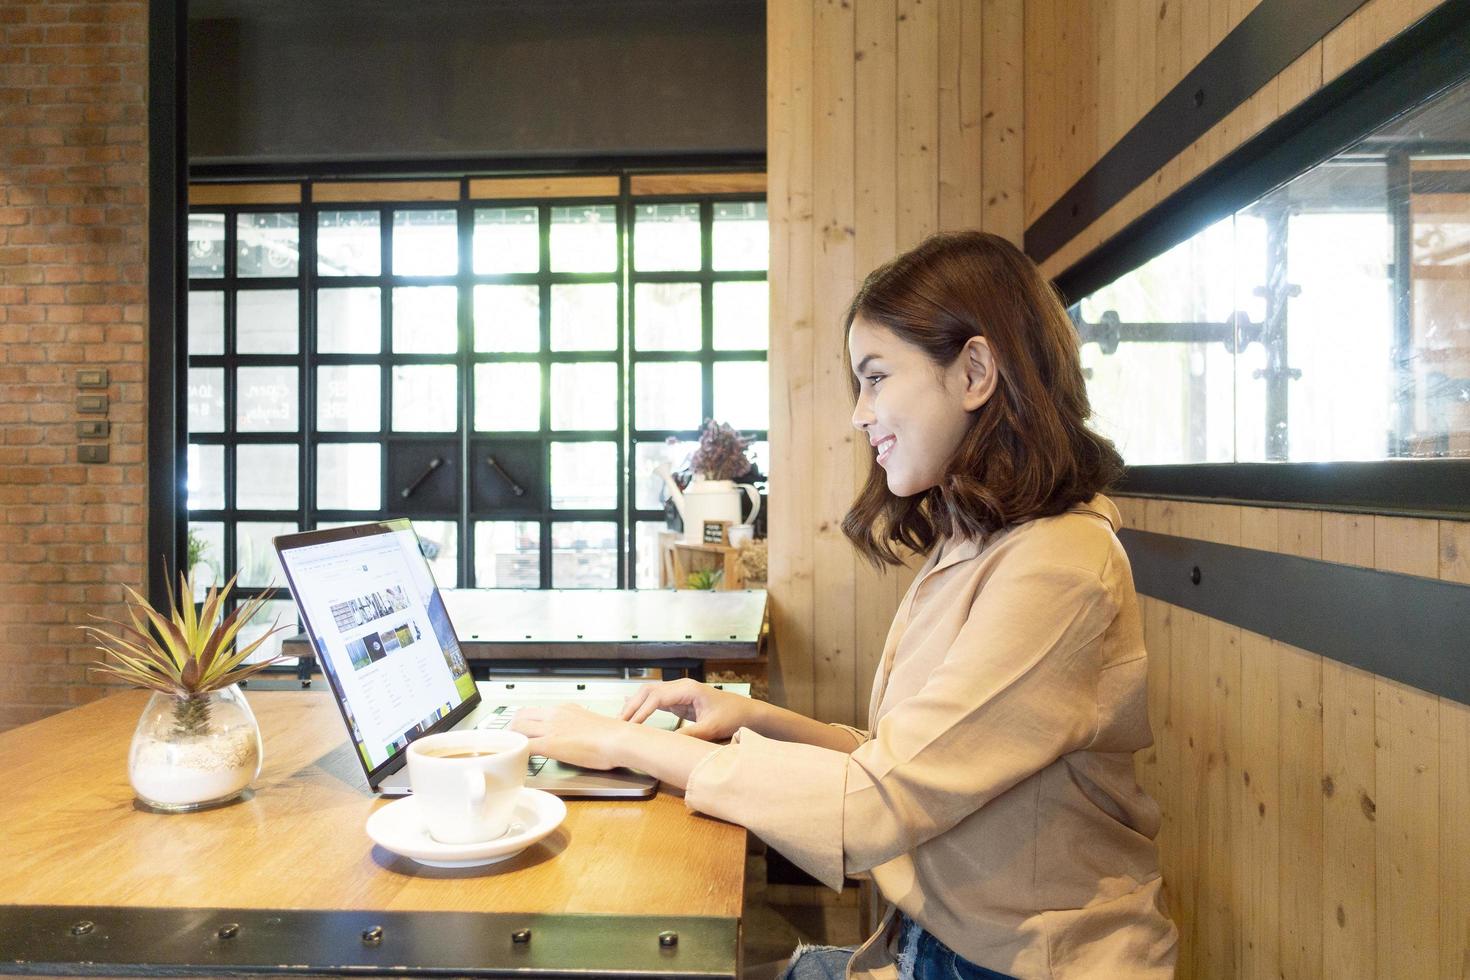 mooie zakenvrouw werkt met haar laptop in coffeeshop foto